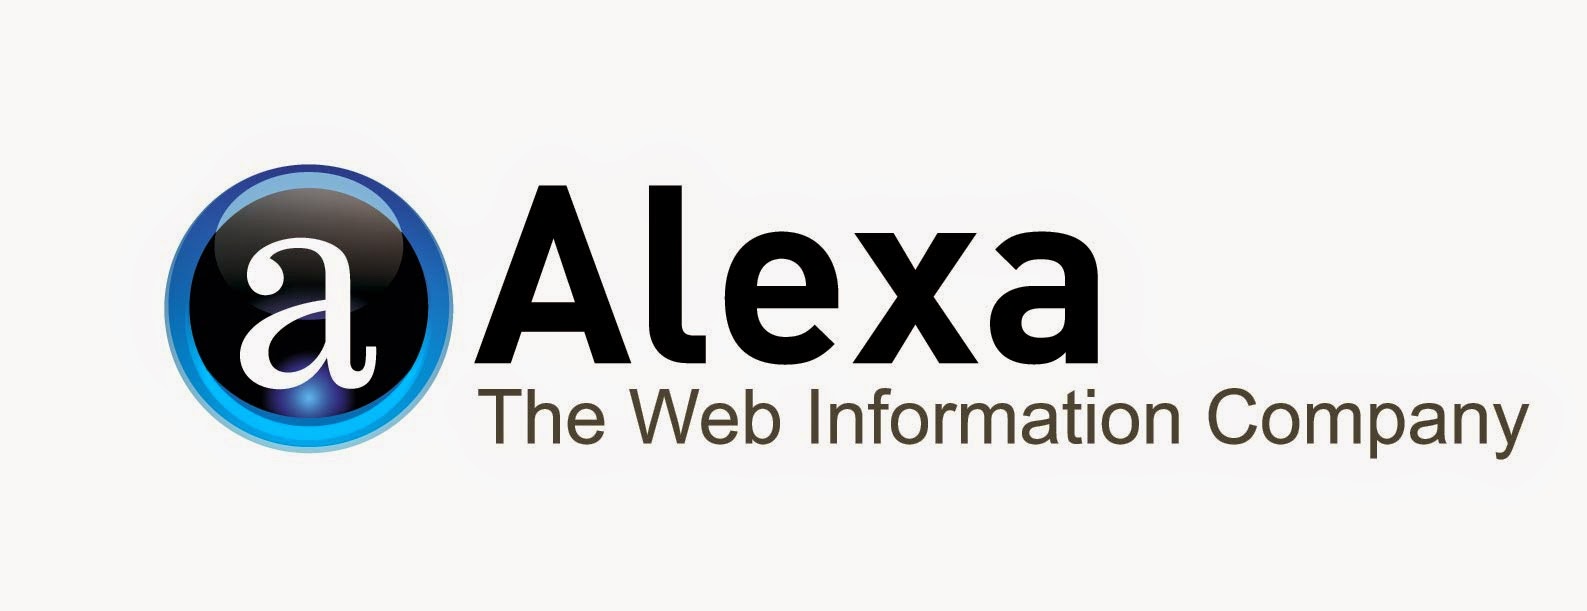 Cara Claim atau Verifikasi Blog di Situs Alexa Terbaru 2015 